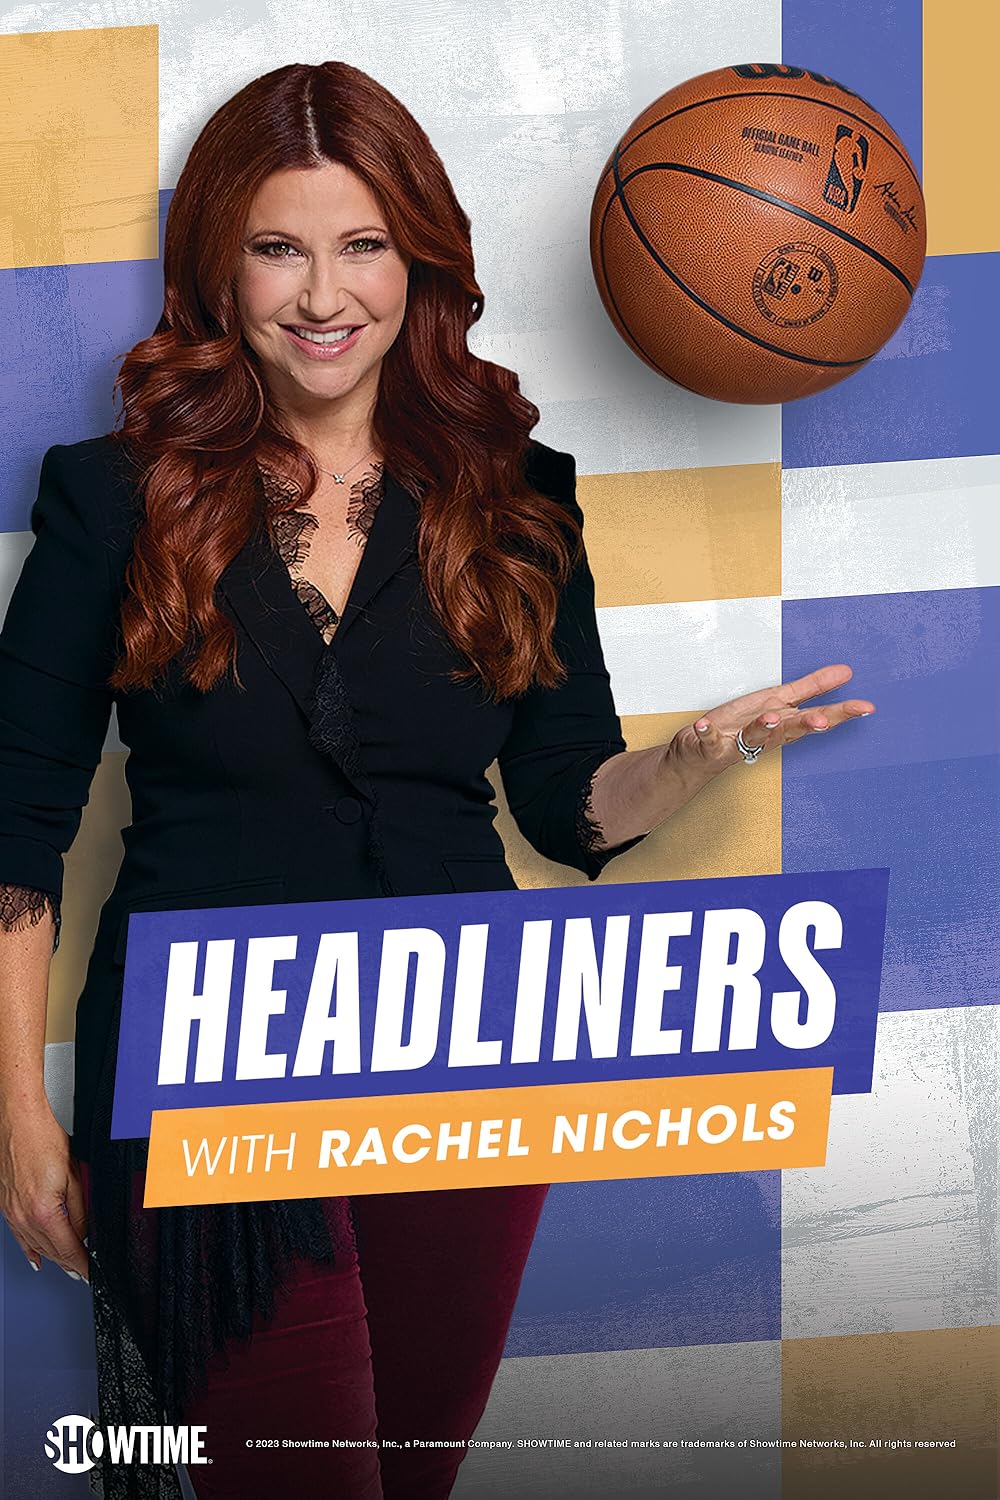 Headliners with Rachel Nichols